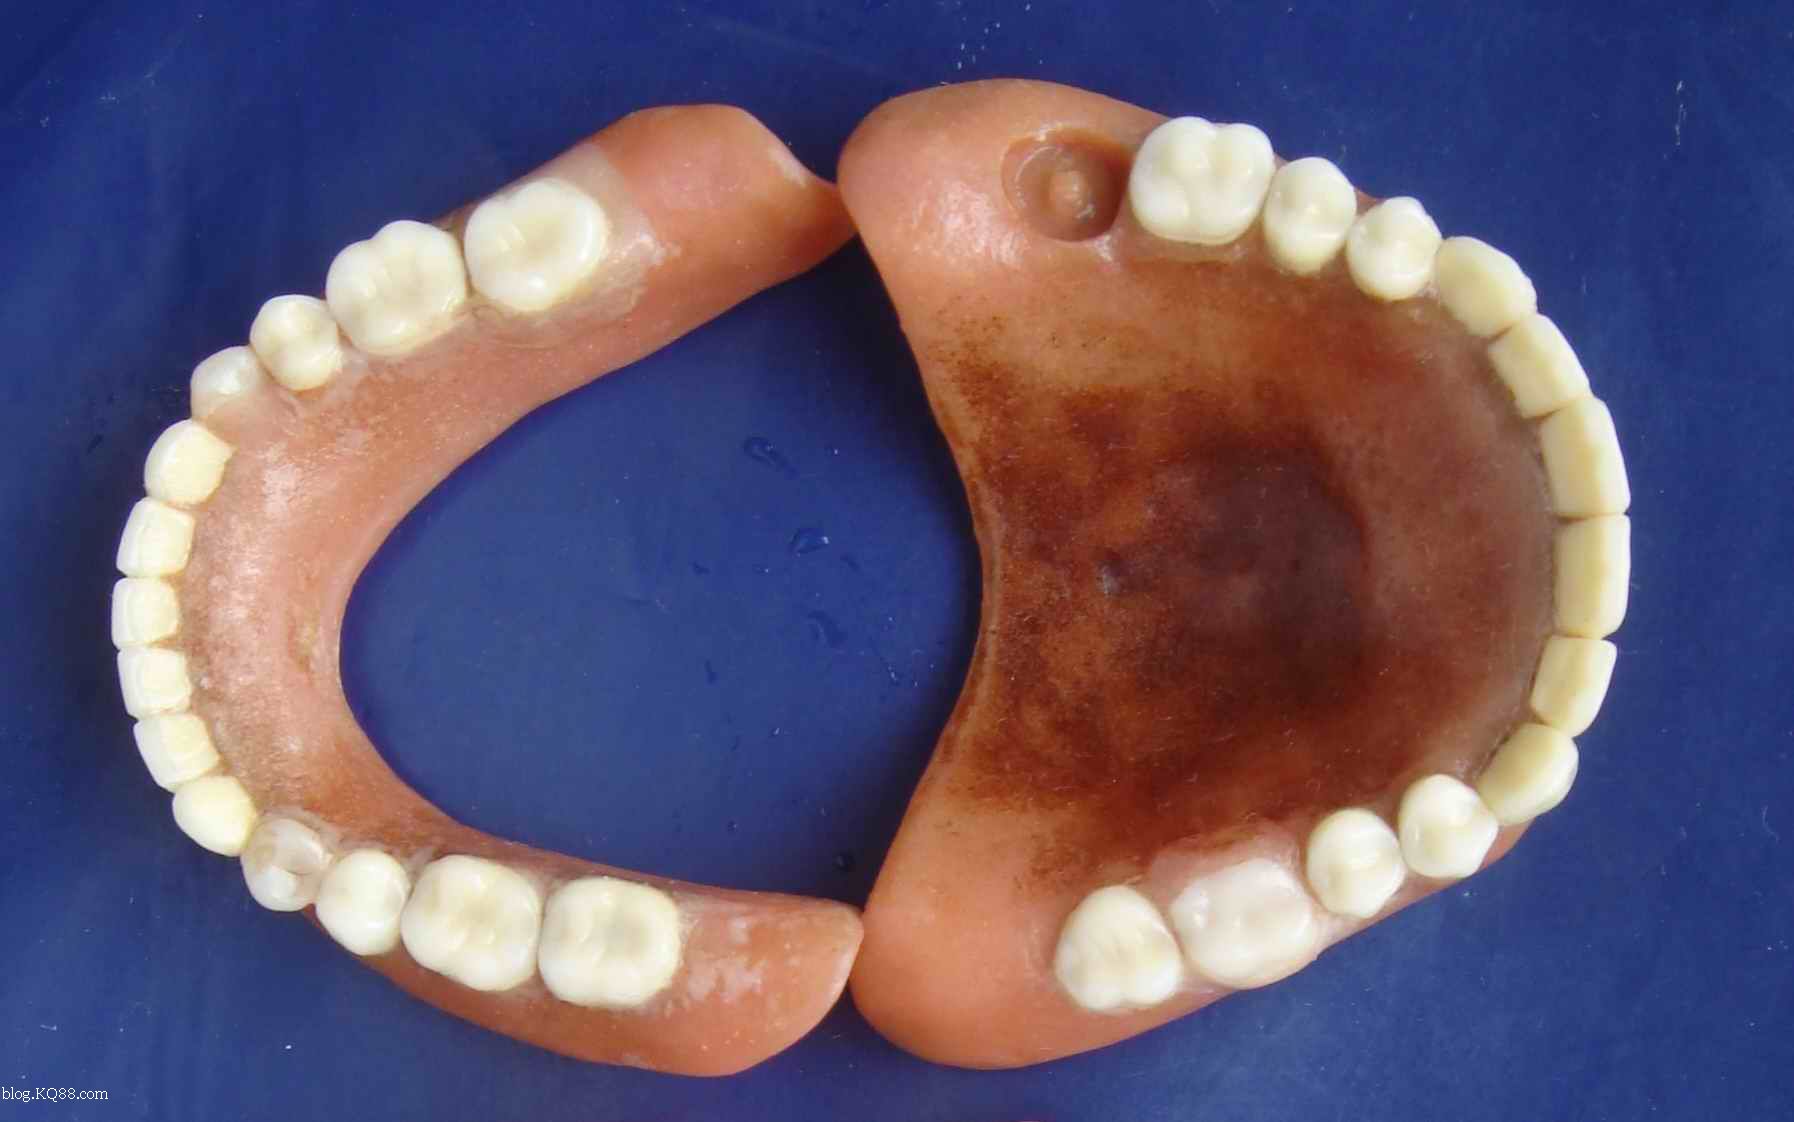 儿童牙齿间隙保持器是什么？ 有什么作用？ _深圳爱康健口腔医院